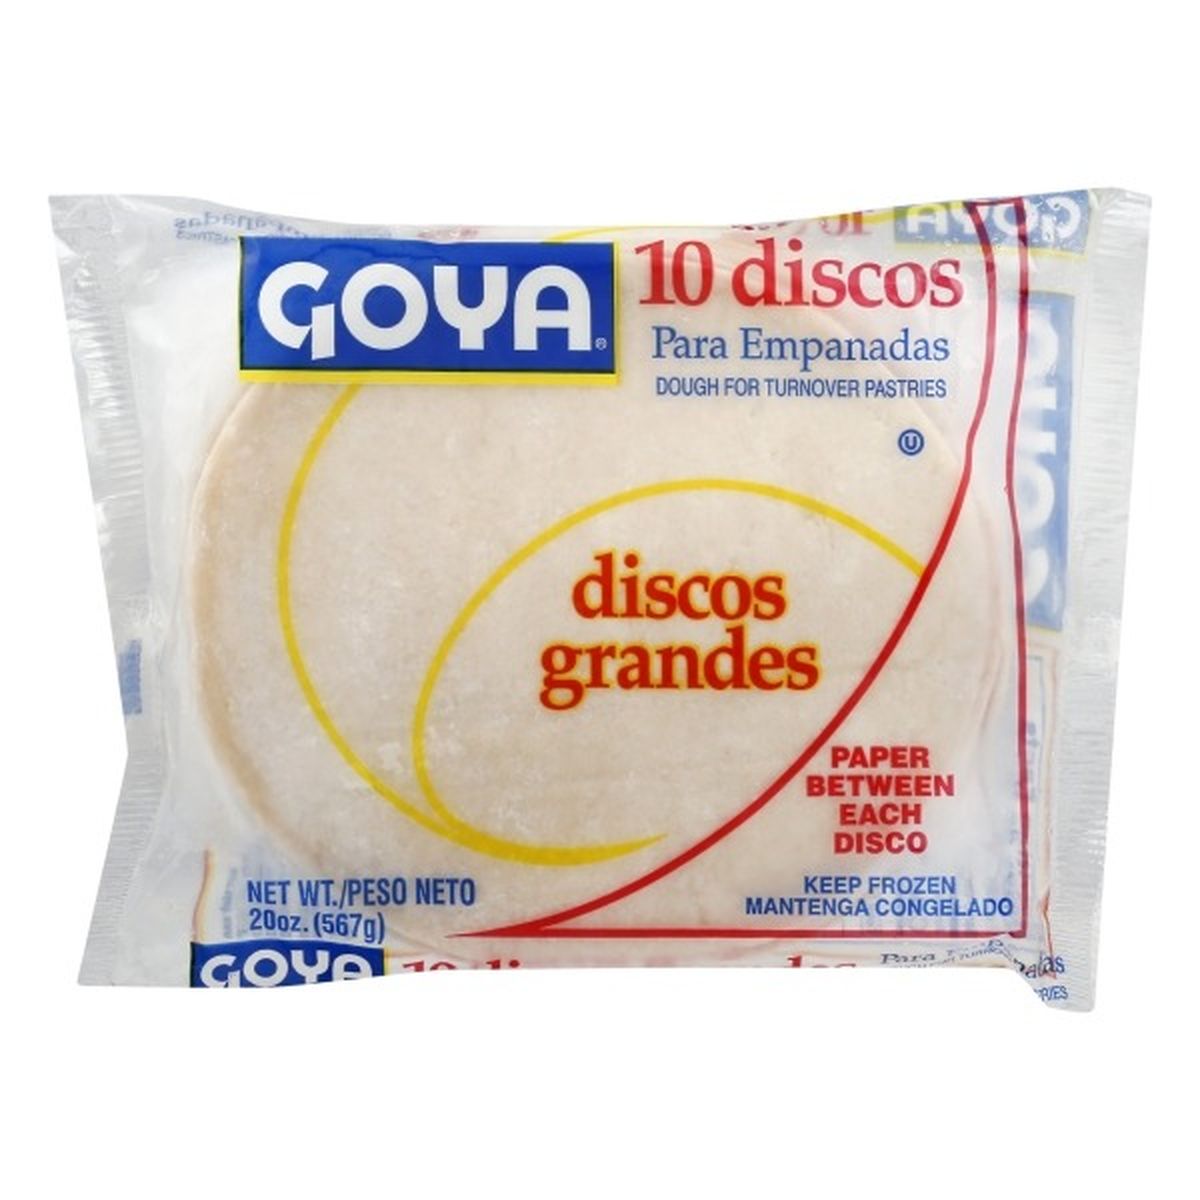 Calories in Goya Discos, Empanadas, Grandes